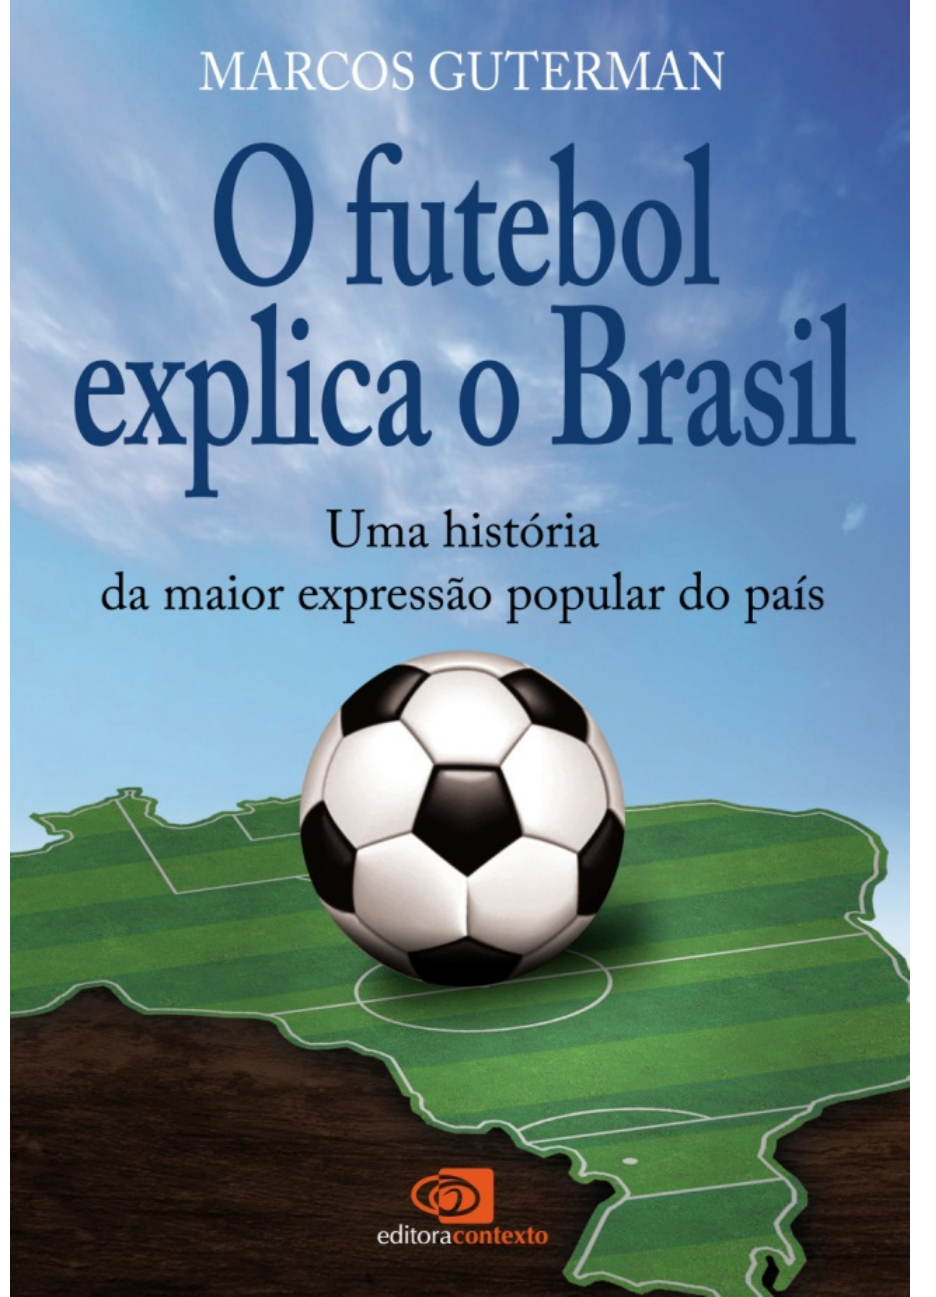 Futebol americano ganha espaço no Brasil — Rudge Ramos Online